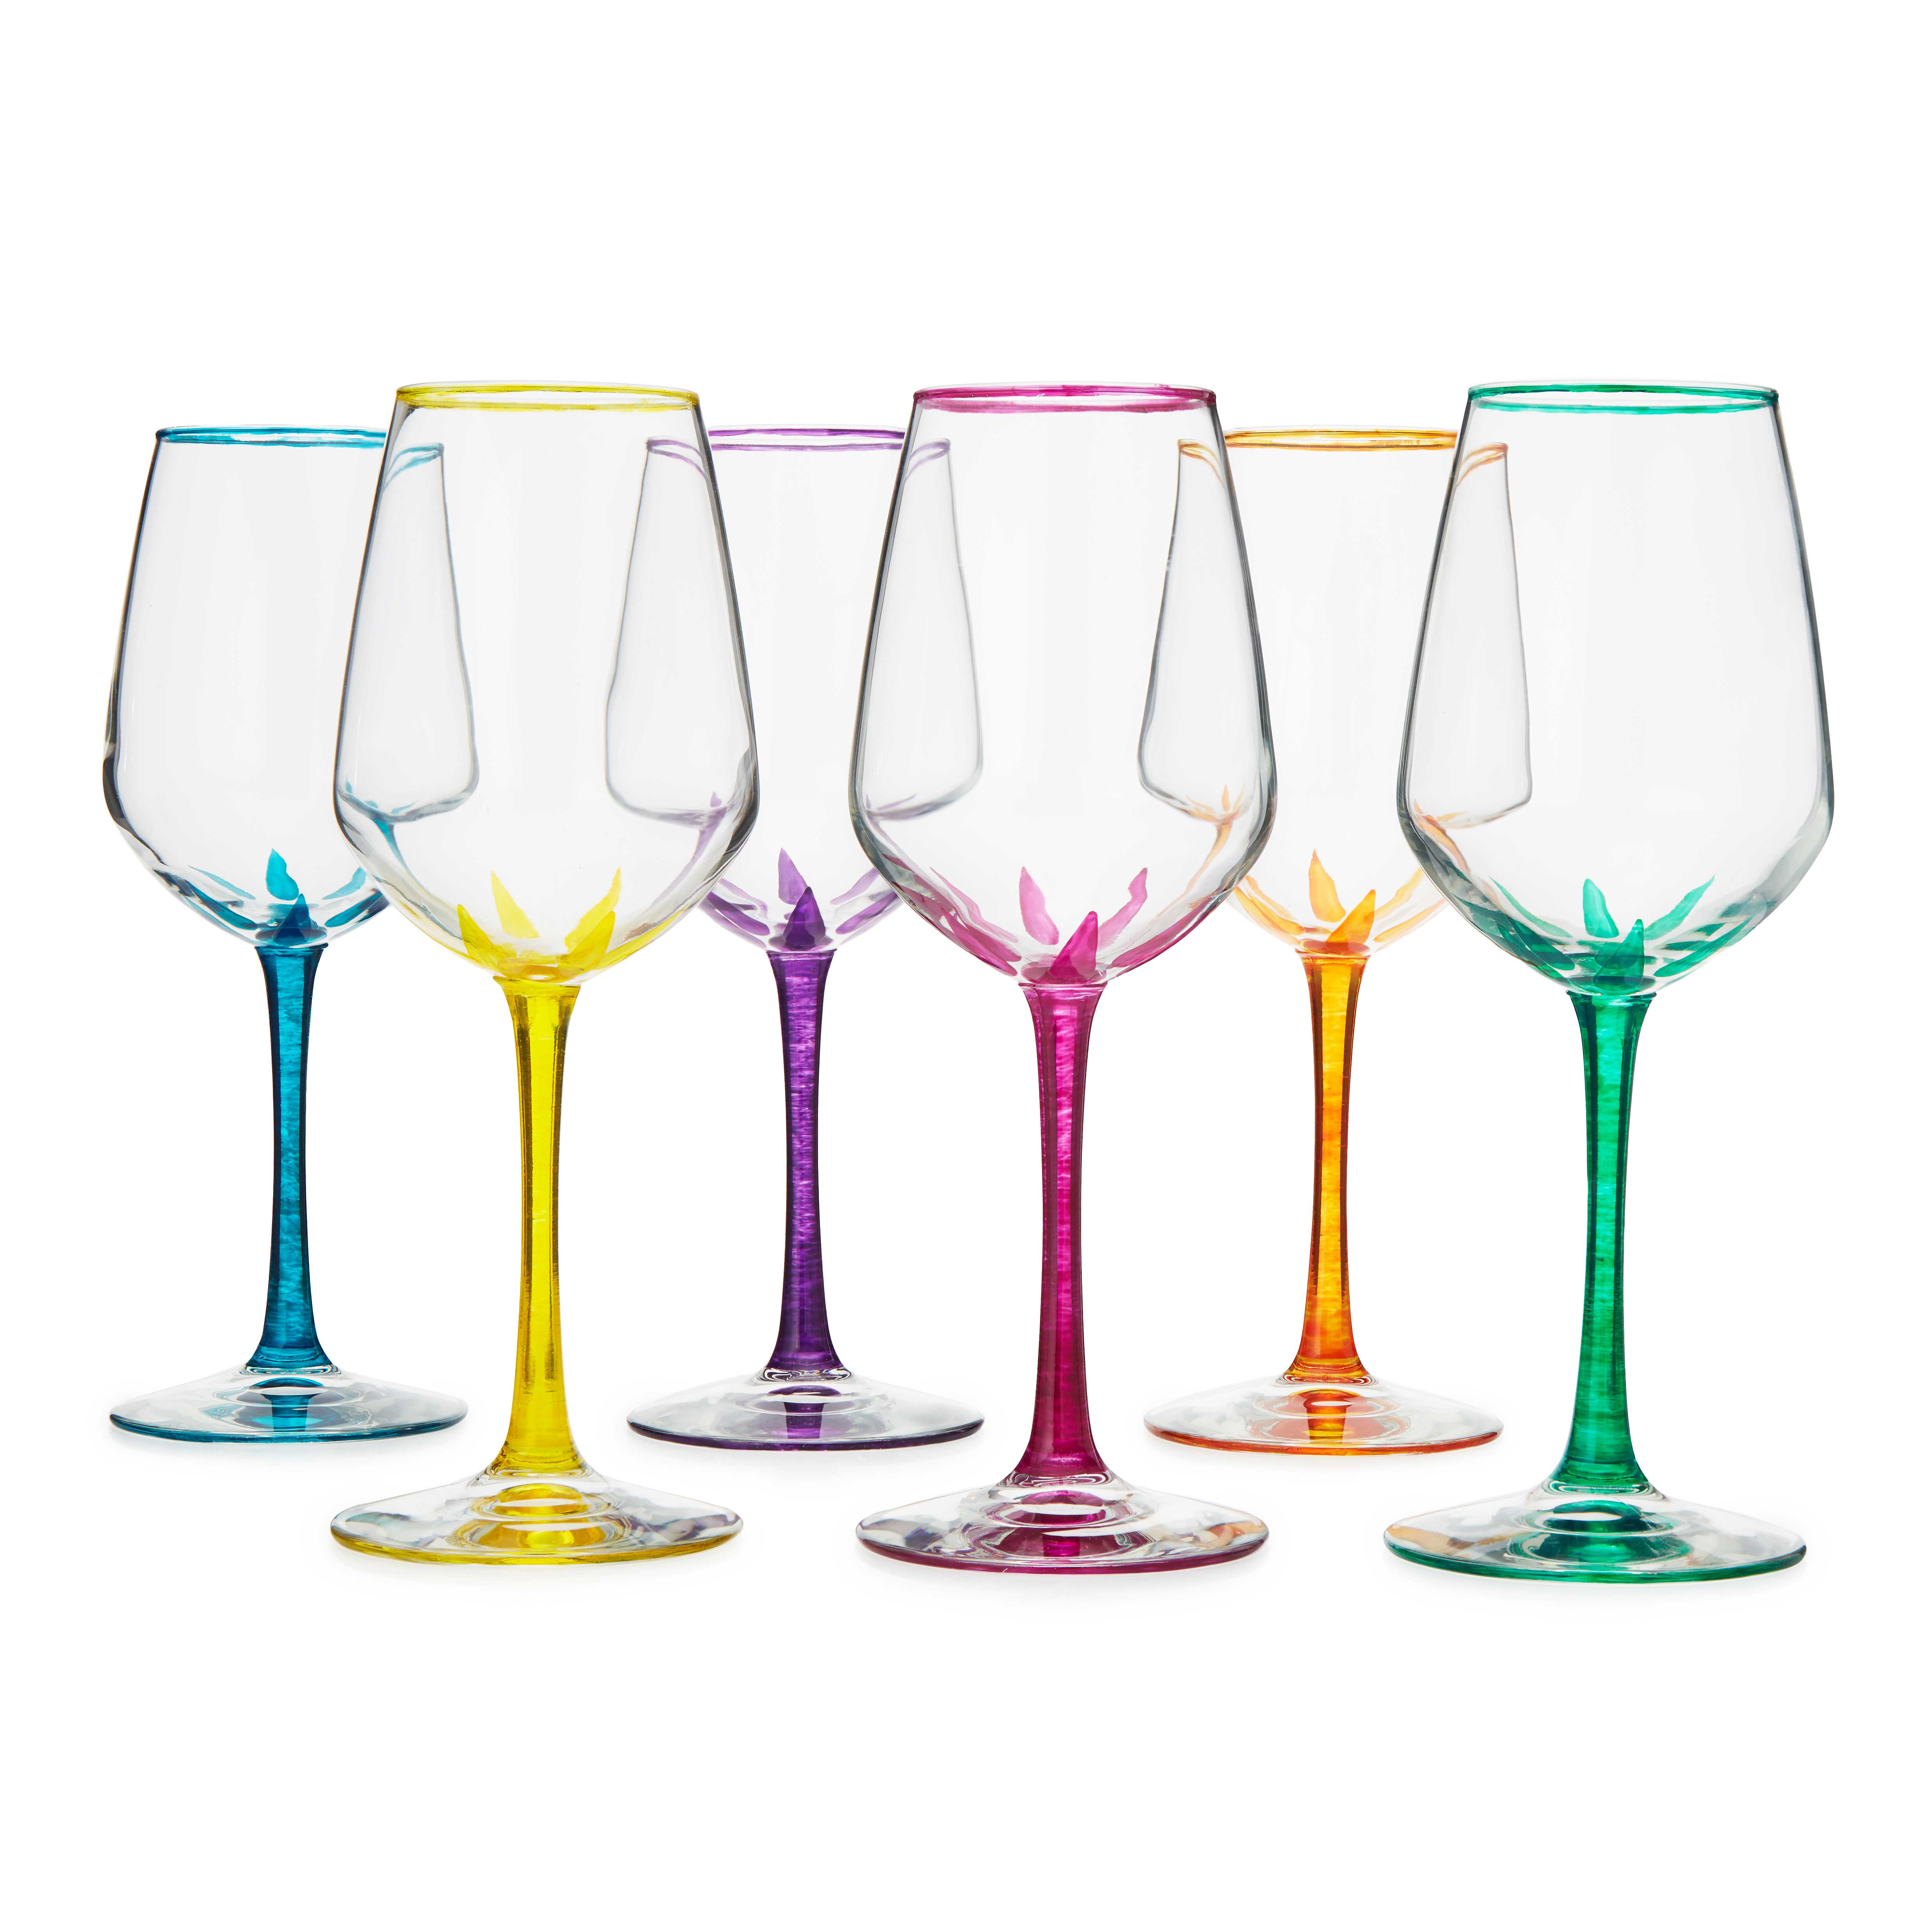 Flower Stemmed Wine Glasses - Set of 6 | hand painted wine glasses